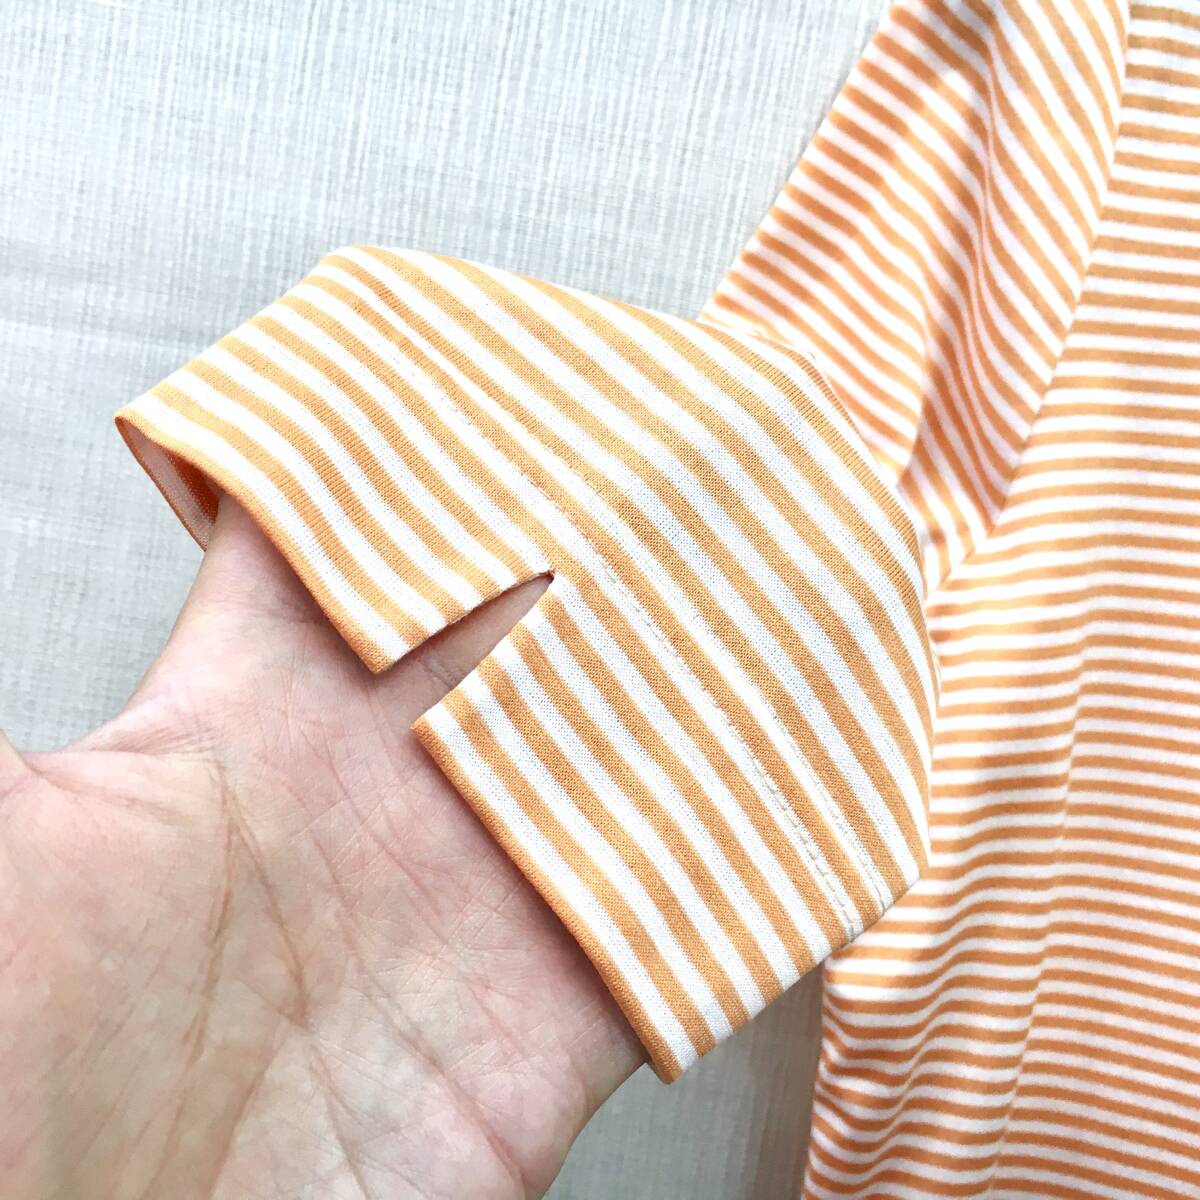 [ новый товар ] сделано в Японии женщина cut and sewn прекрасное качество хлопок 100% 6 минут рукав M размер бесплатная доставка вязаный рубашка-поло женский стиральная машина OK женщина рубашка-поло 